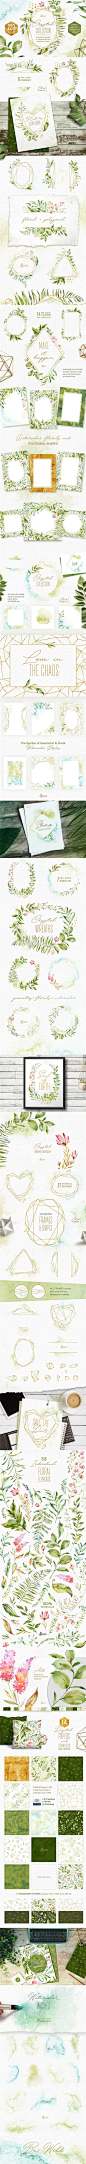 清新手绘水彩叶子绿色植物边框文字框海报背景PNG素材